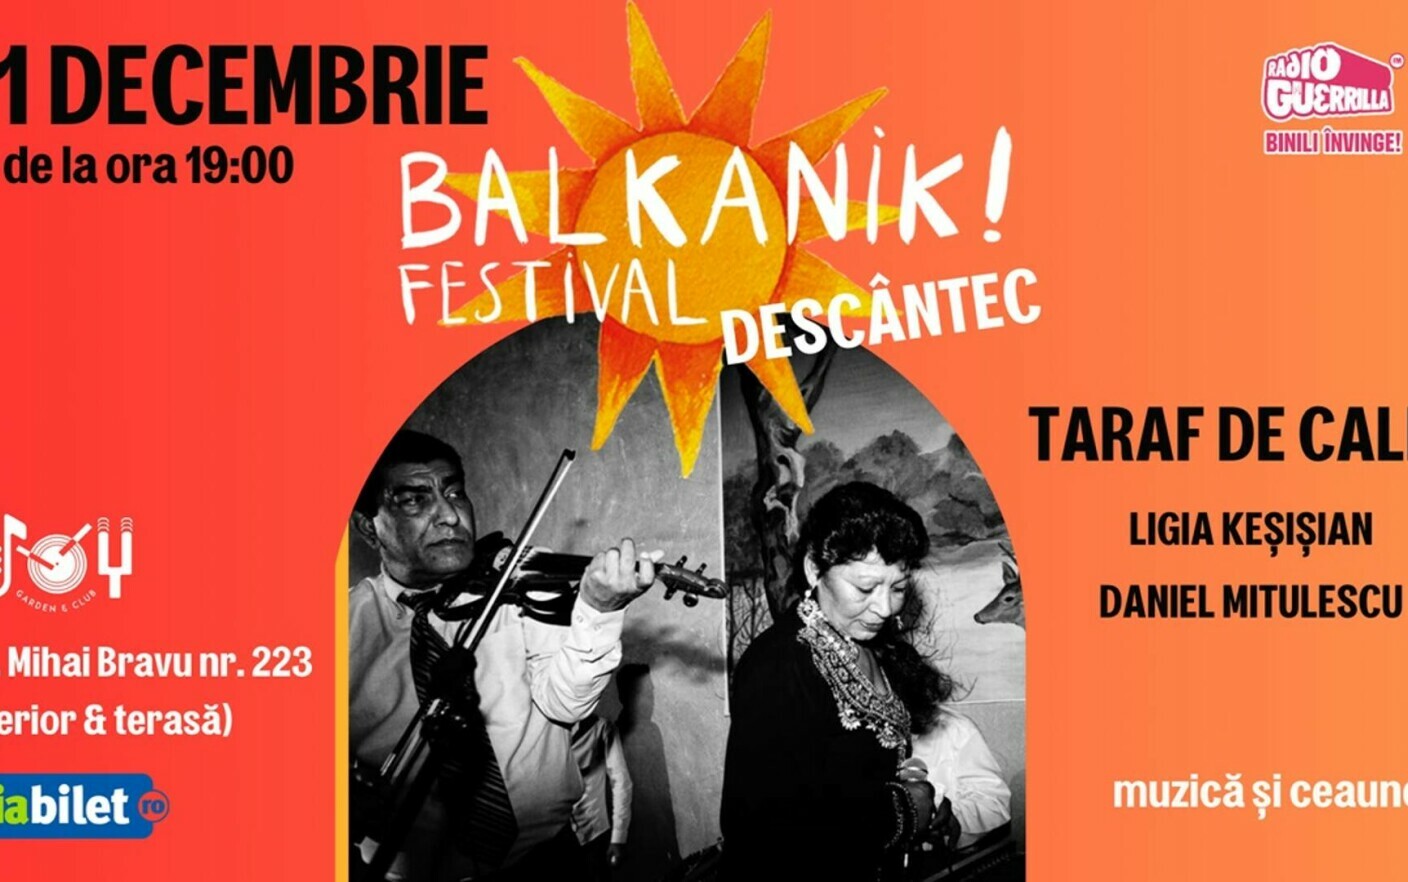 Balkanik Festival lansează seria de petreceri DESCÂNTEC!